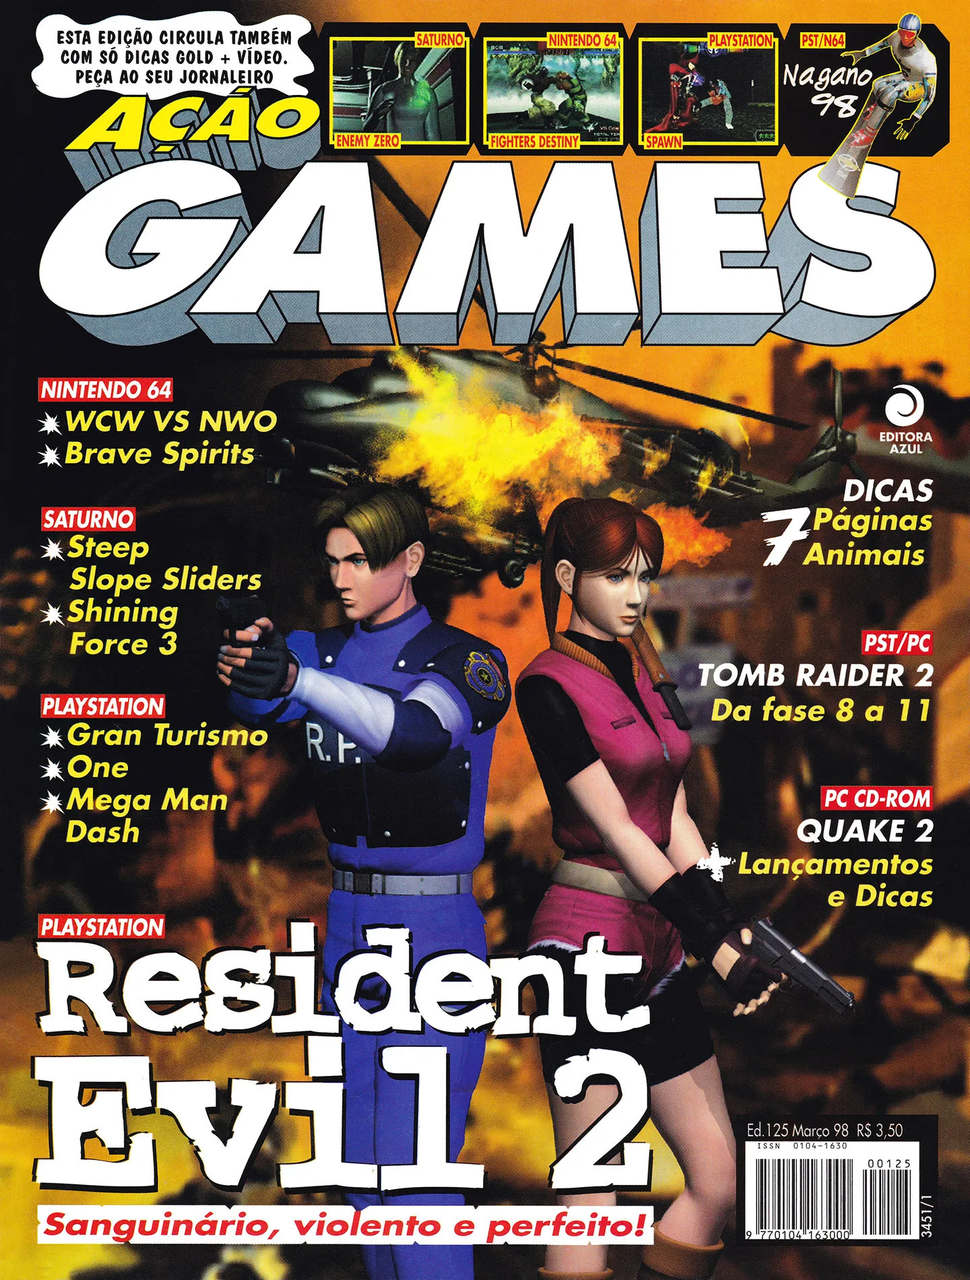 História e curiosidades da revista Gamers - Seganet - Retro Games